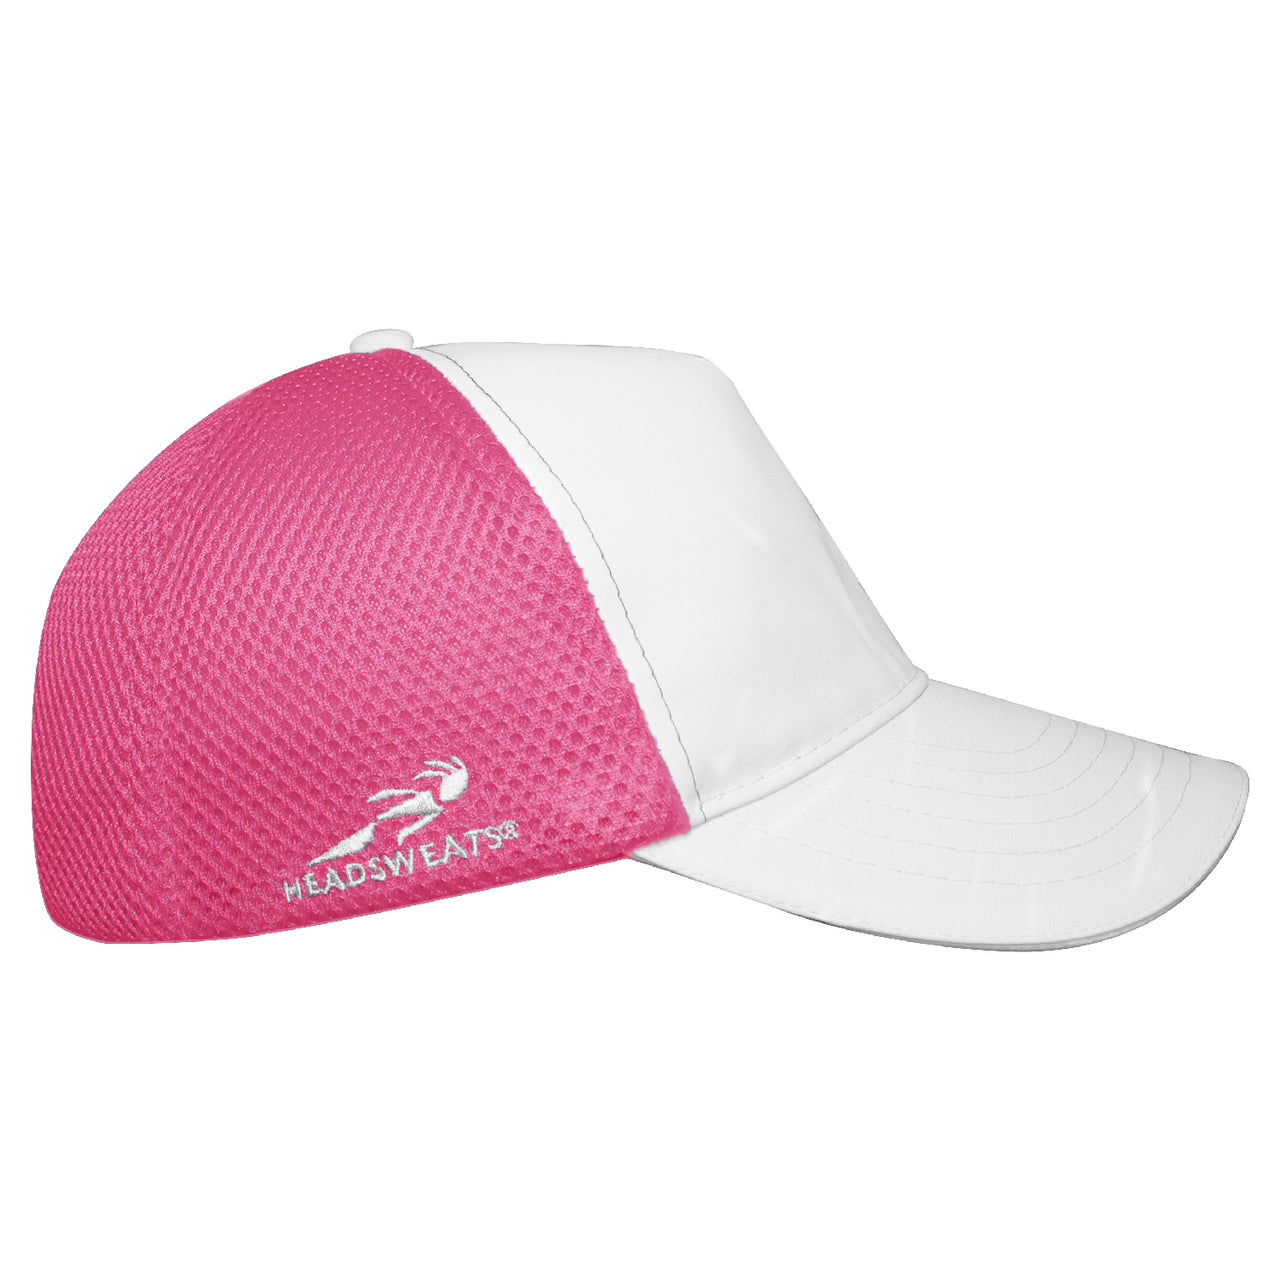 Horen van hoffelijkheid Zelfrespect White/Hot Pink Trucker Hat | Customizable Trucker Hat | Performance &  Lifestyle at Headsweats